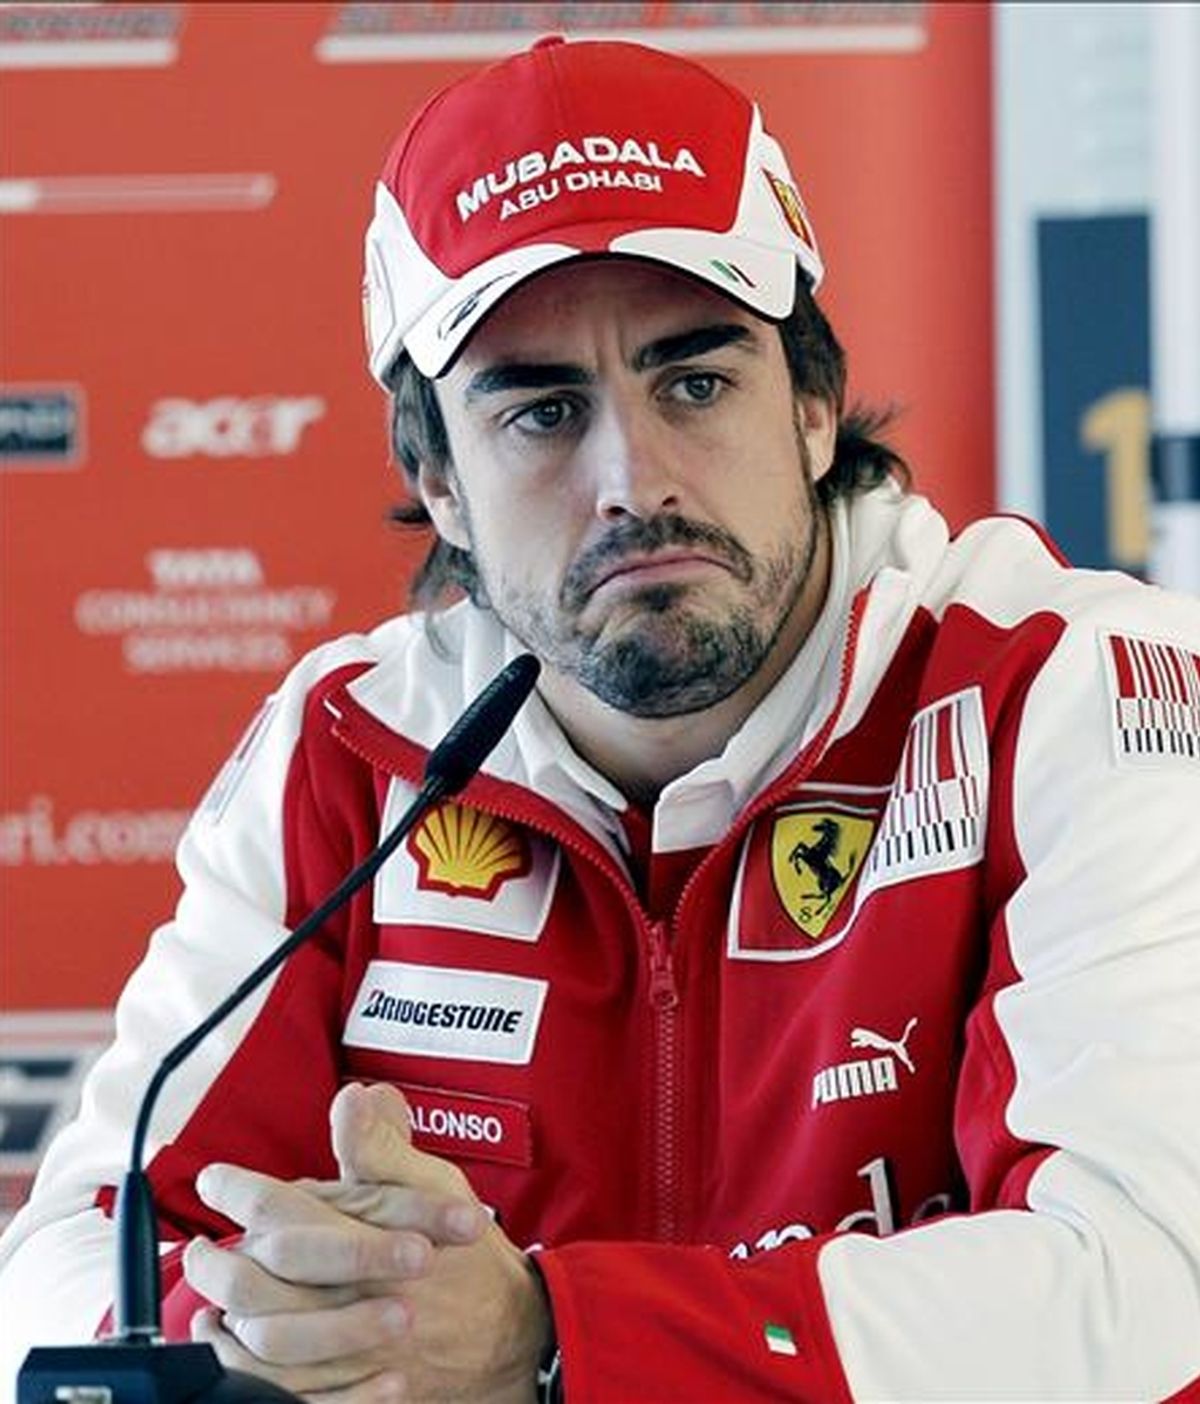 El piloto español de la escudería Ferrari, Fernando Alonso, durante la rueda de prensa que ha ofrecido en el circuito valenciano de Cheste. EFE